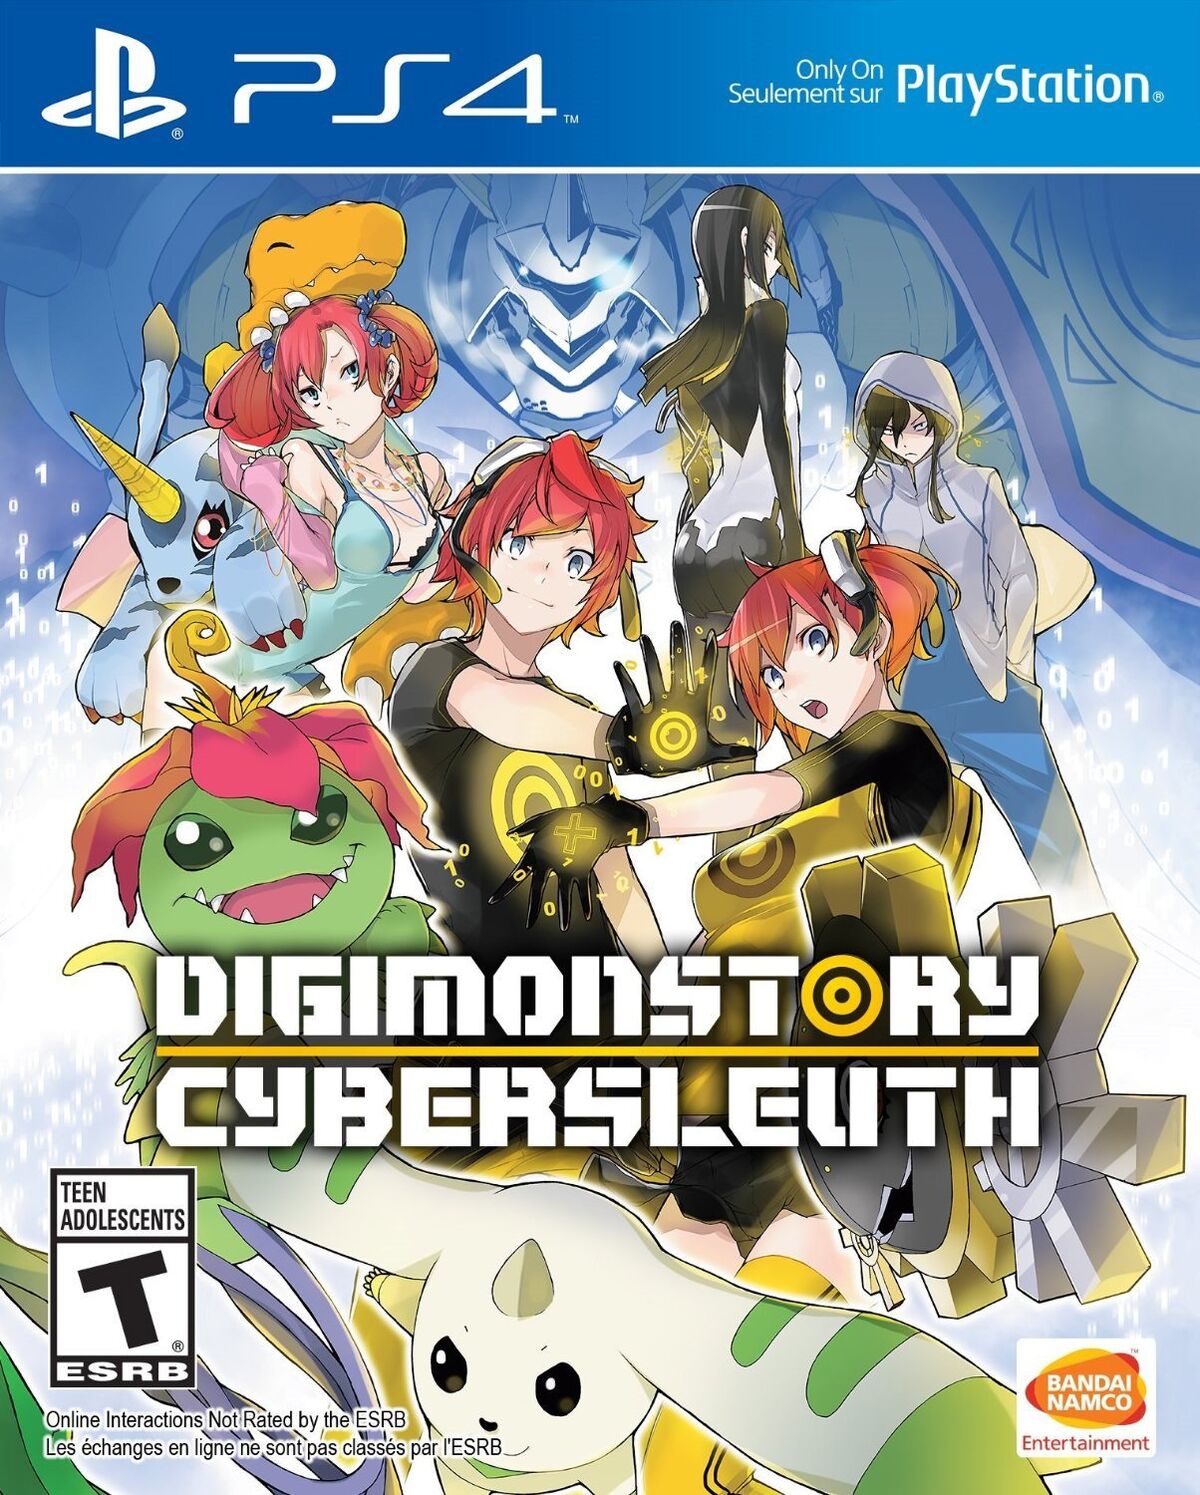 Buy Digimon Adventure tri.: Loss - Microsoft Store